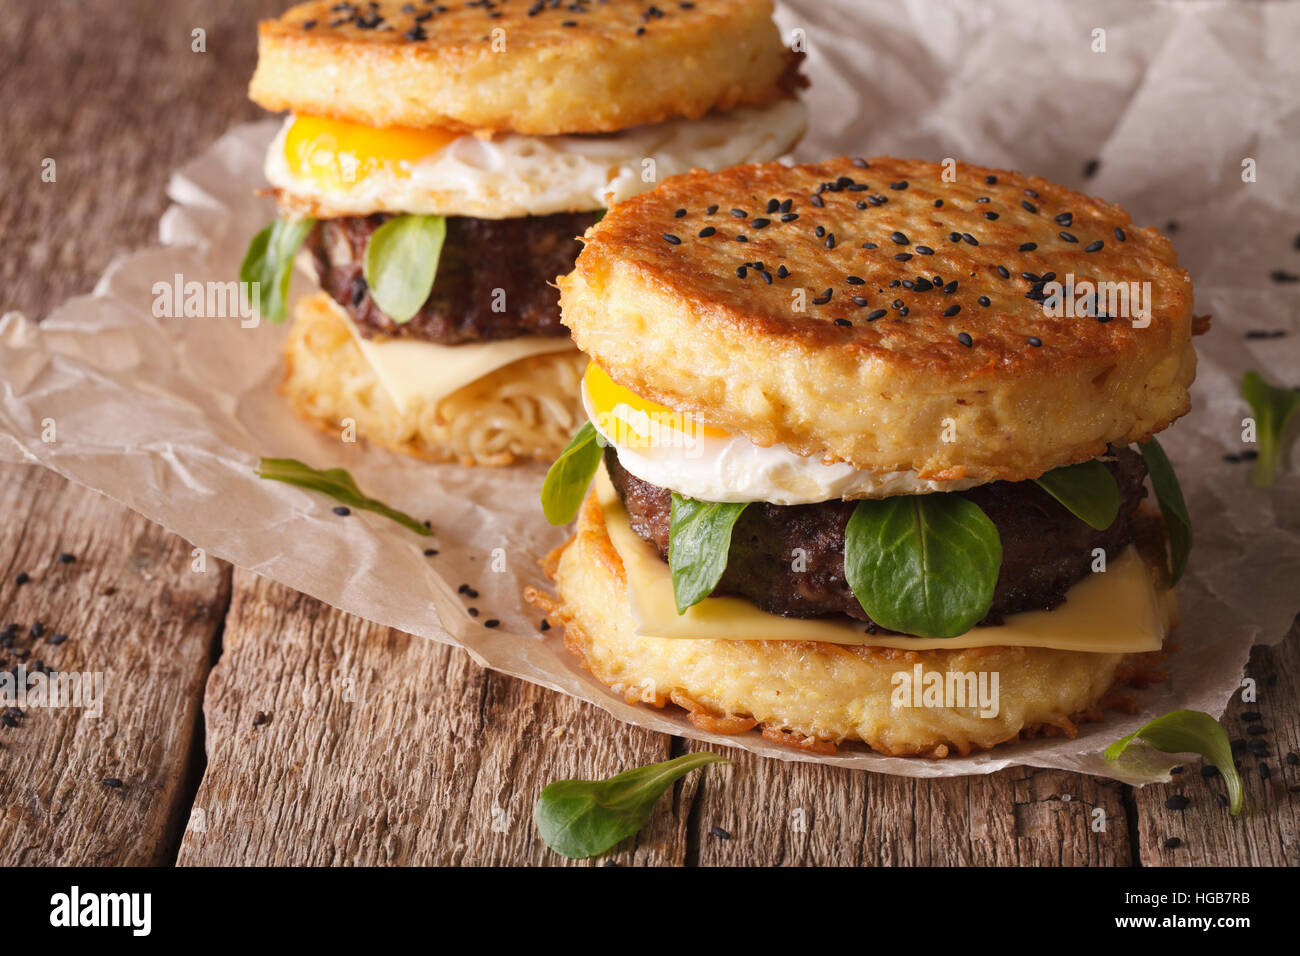 Cibo fast food immagini e fotografie stock ad alta risoluzione - Alamy